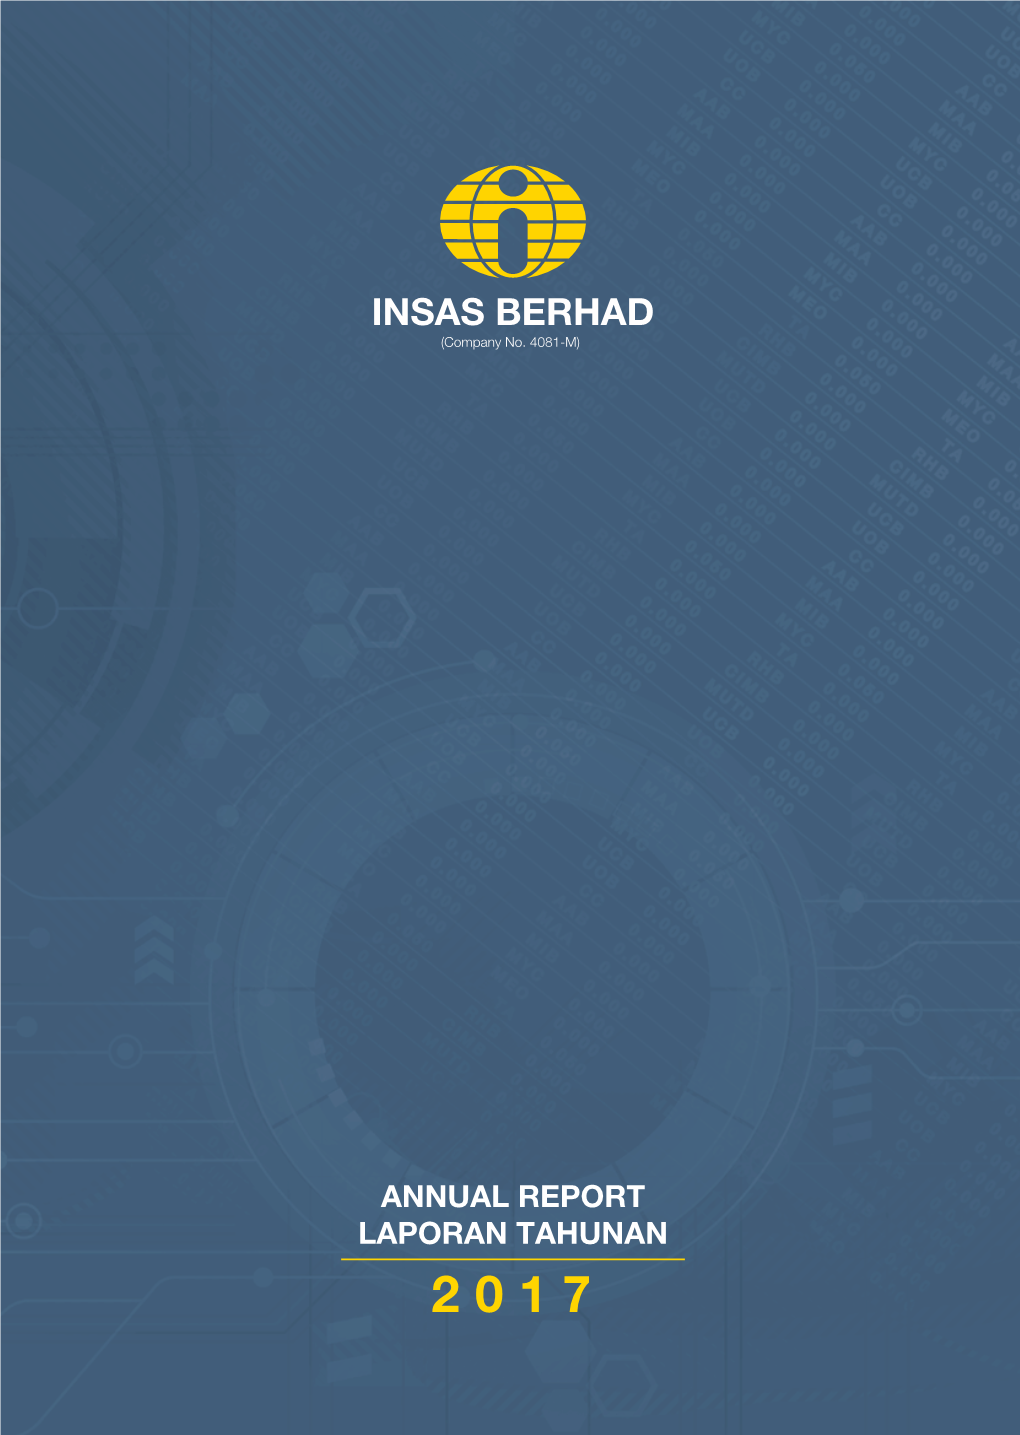 Annual Report 2017 Laporan Tahunan